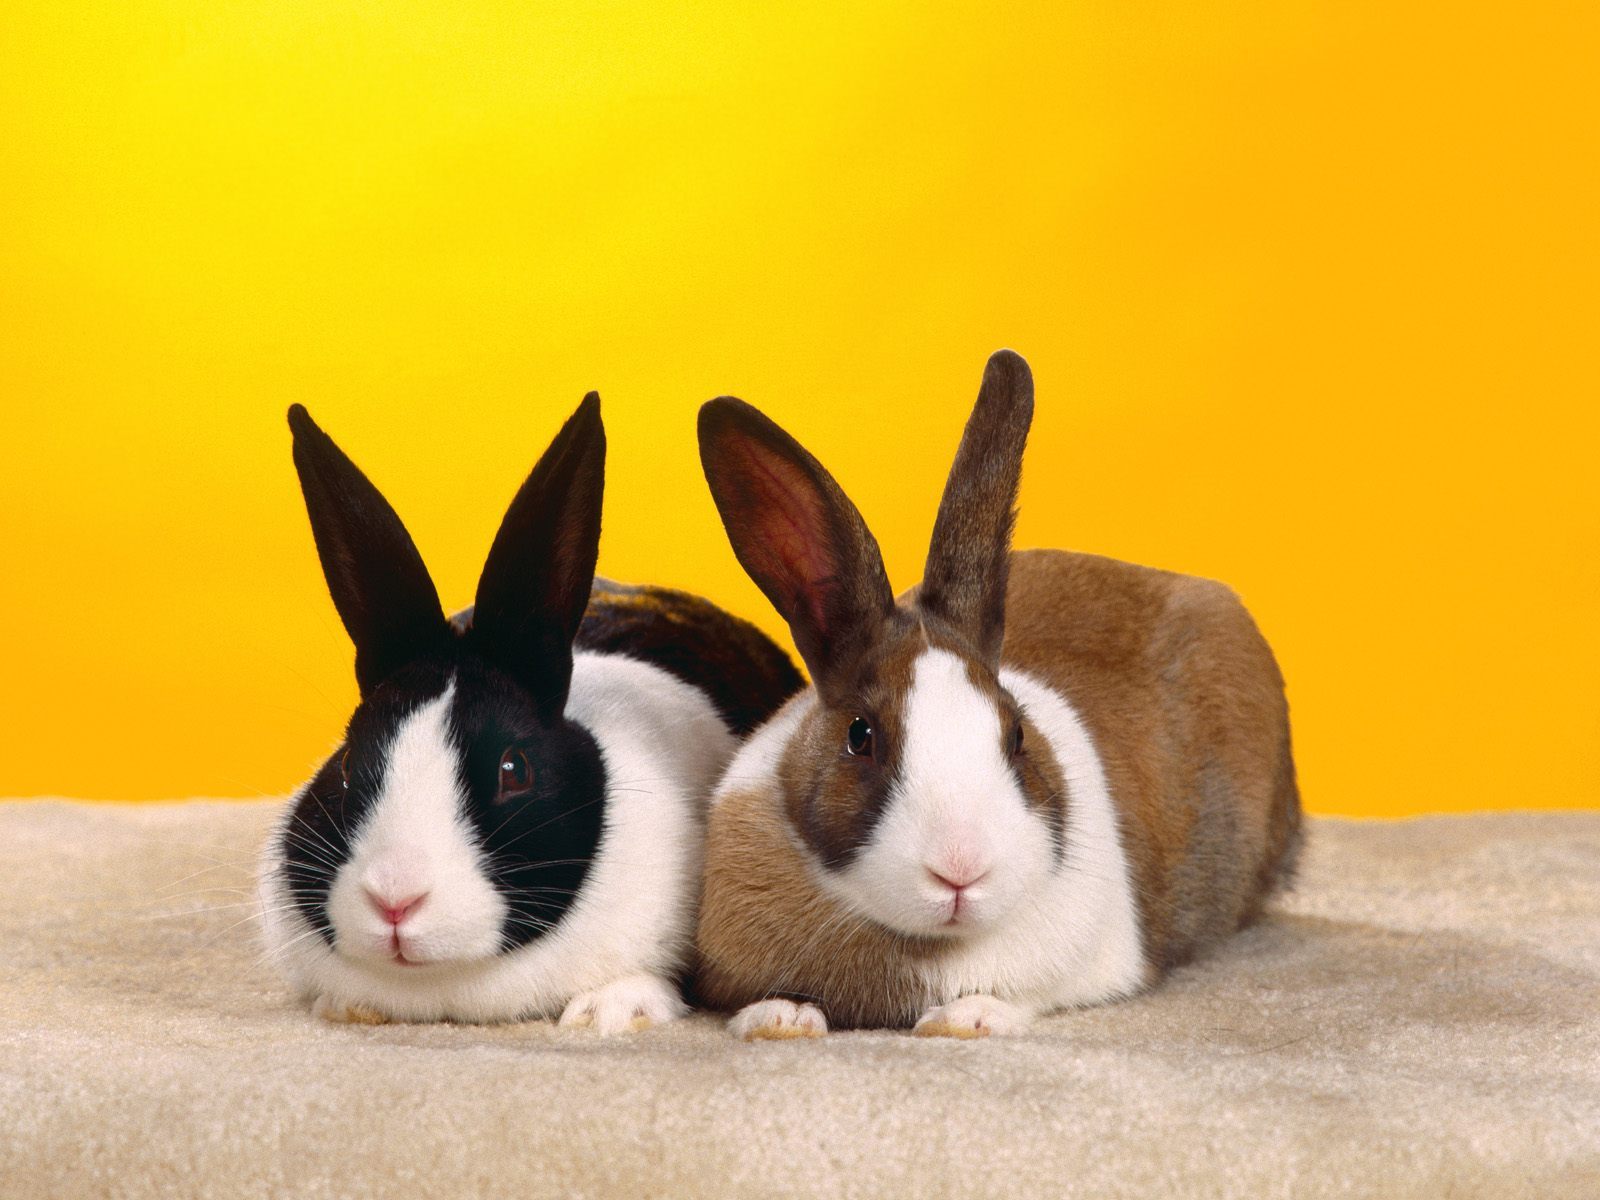 Скачать обои бесплатно Кролики, Животные картинка на рабочий стол ПК